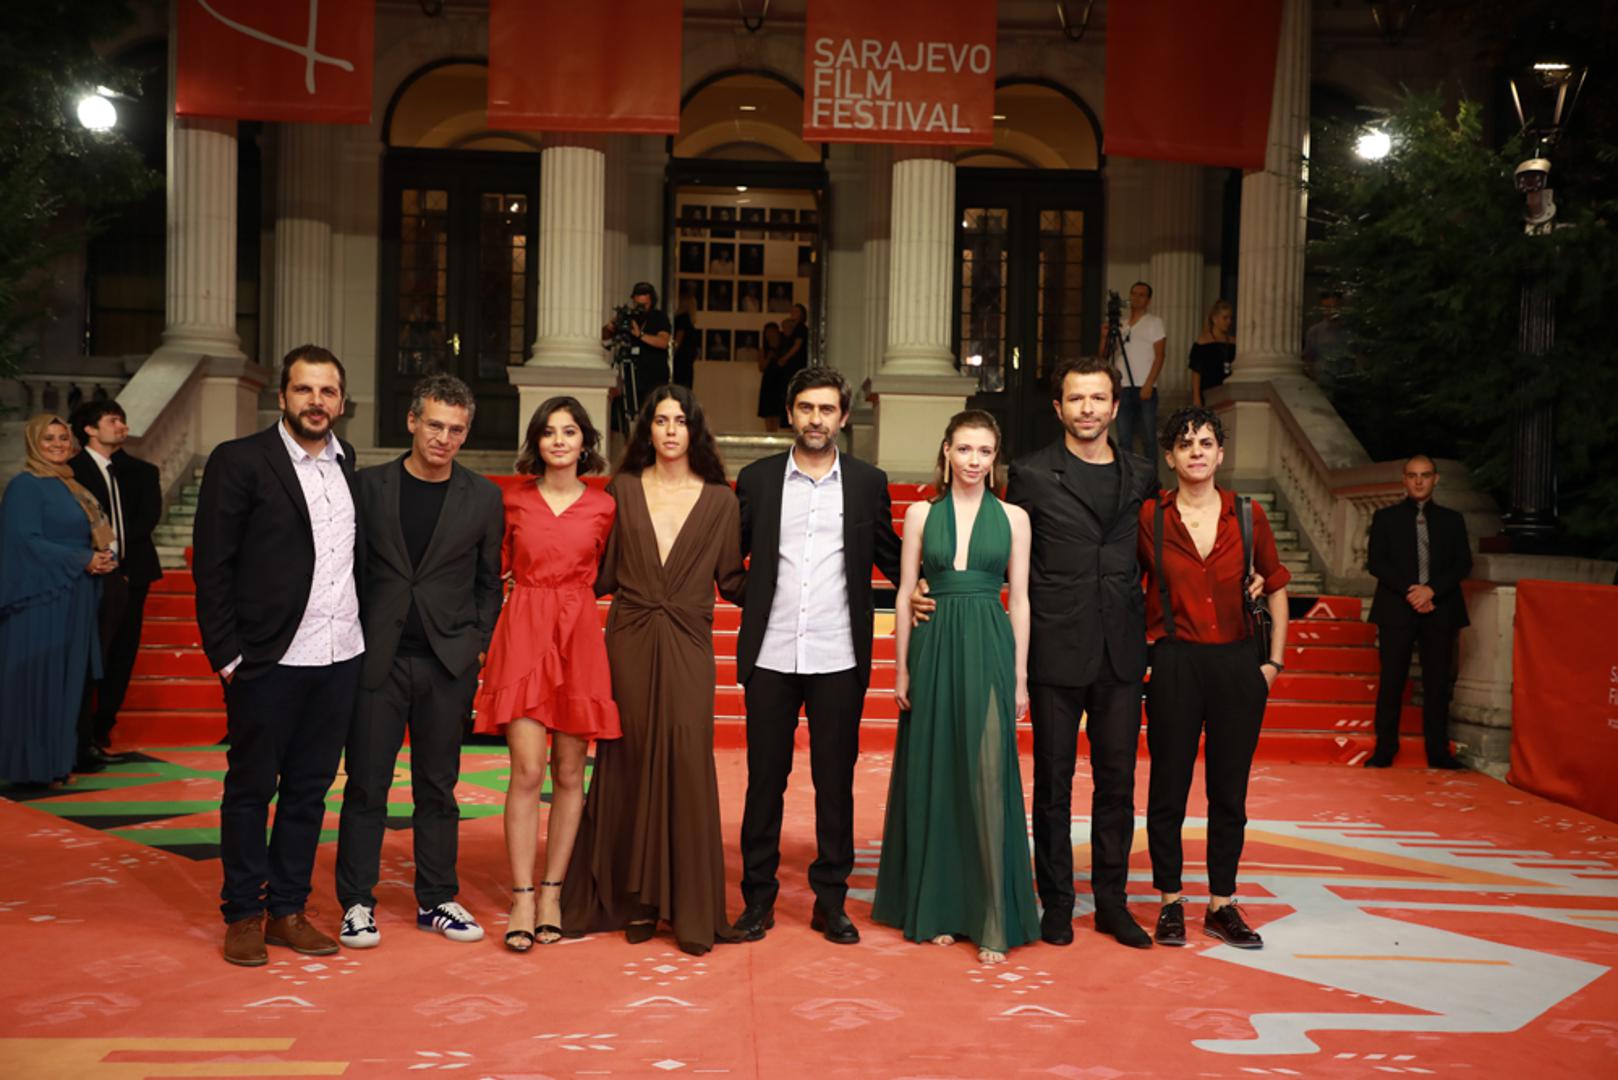 Regionalnom premijerom filma Priča o tri sestre turskog redatelja Emina Alpera zatvorio se Natjecateljski program – igrani film 25. Sarajevo Film Festivala.